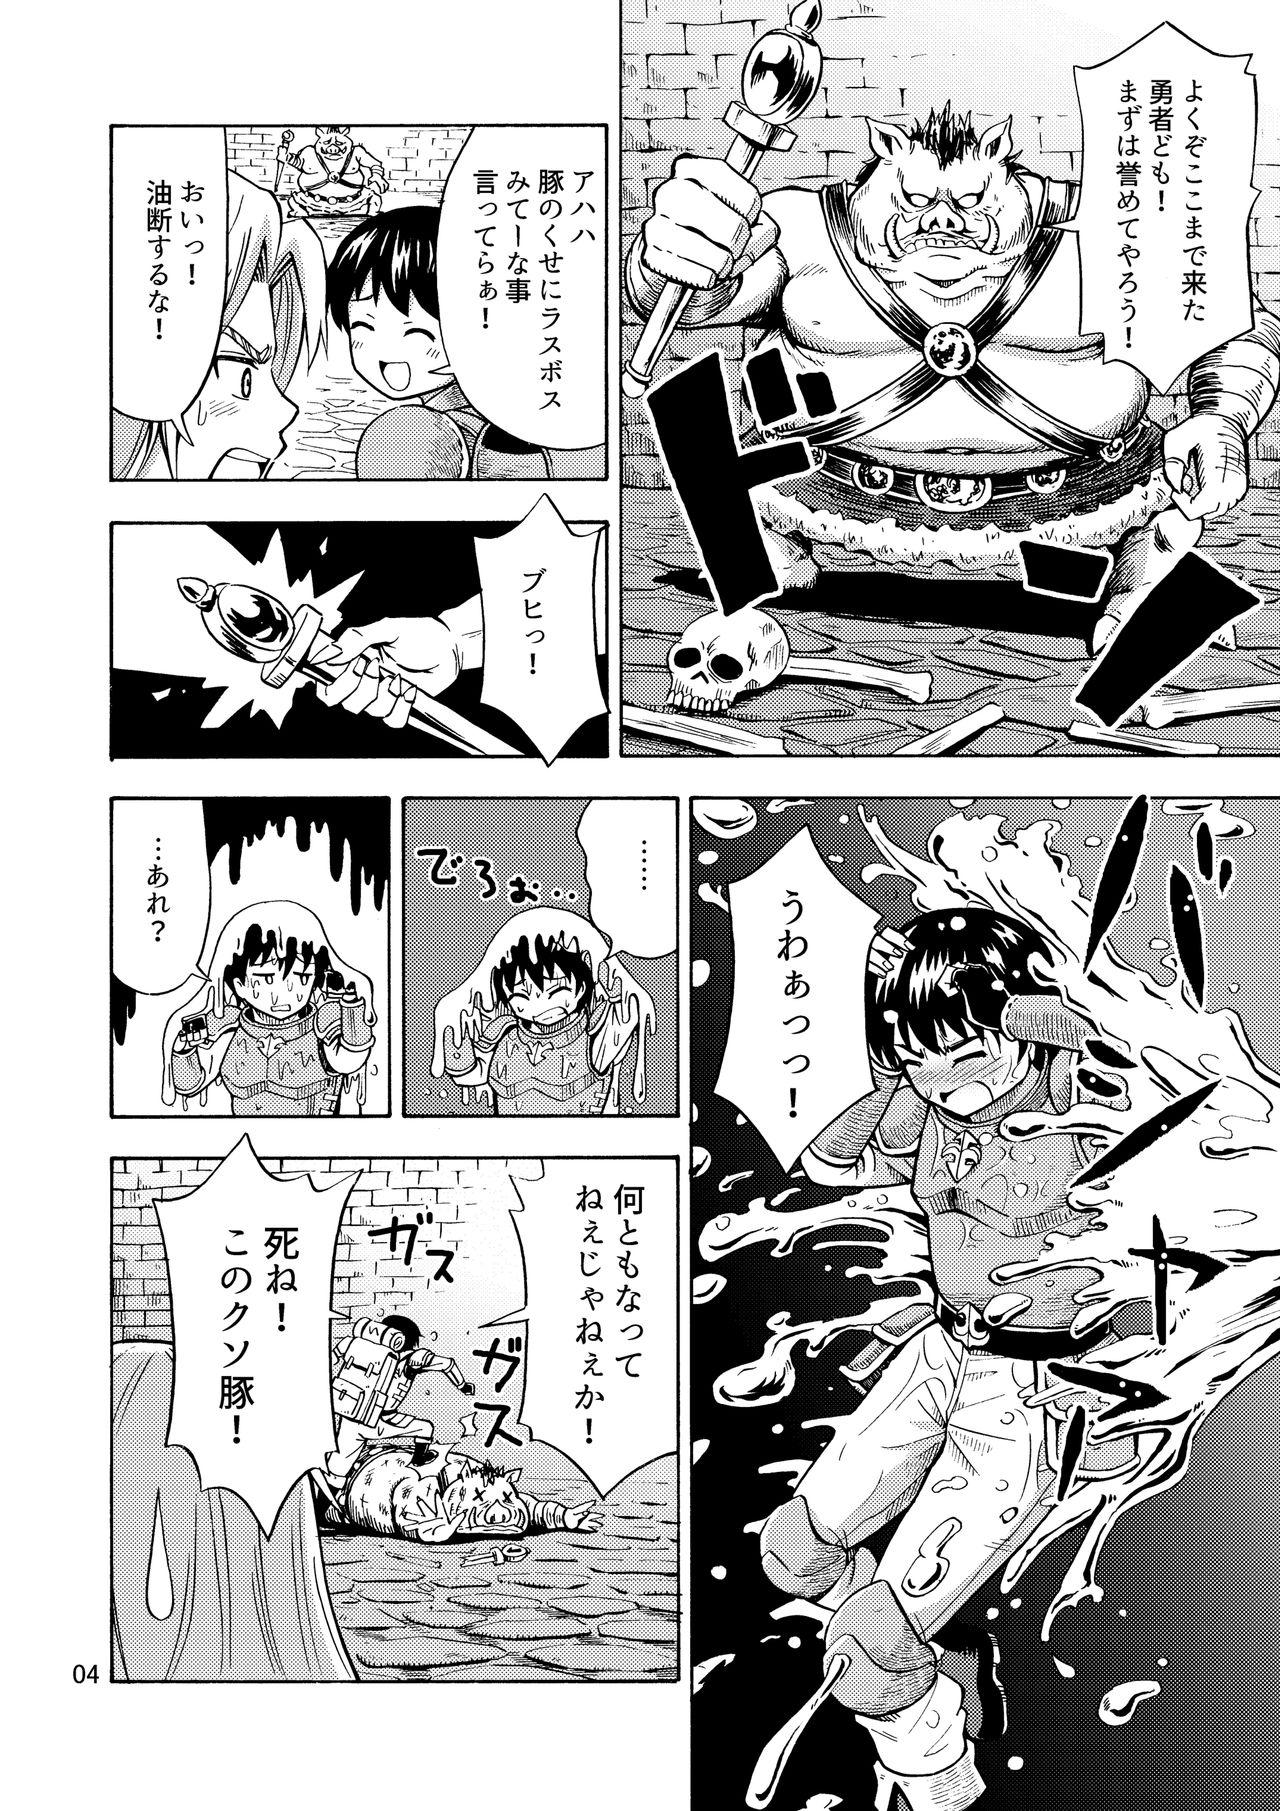 Polla Yuusha wa Onnanoko ni Naru Noroi o Kakerareta! - Original Gaybukkake - Page 6